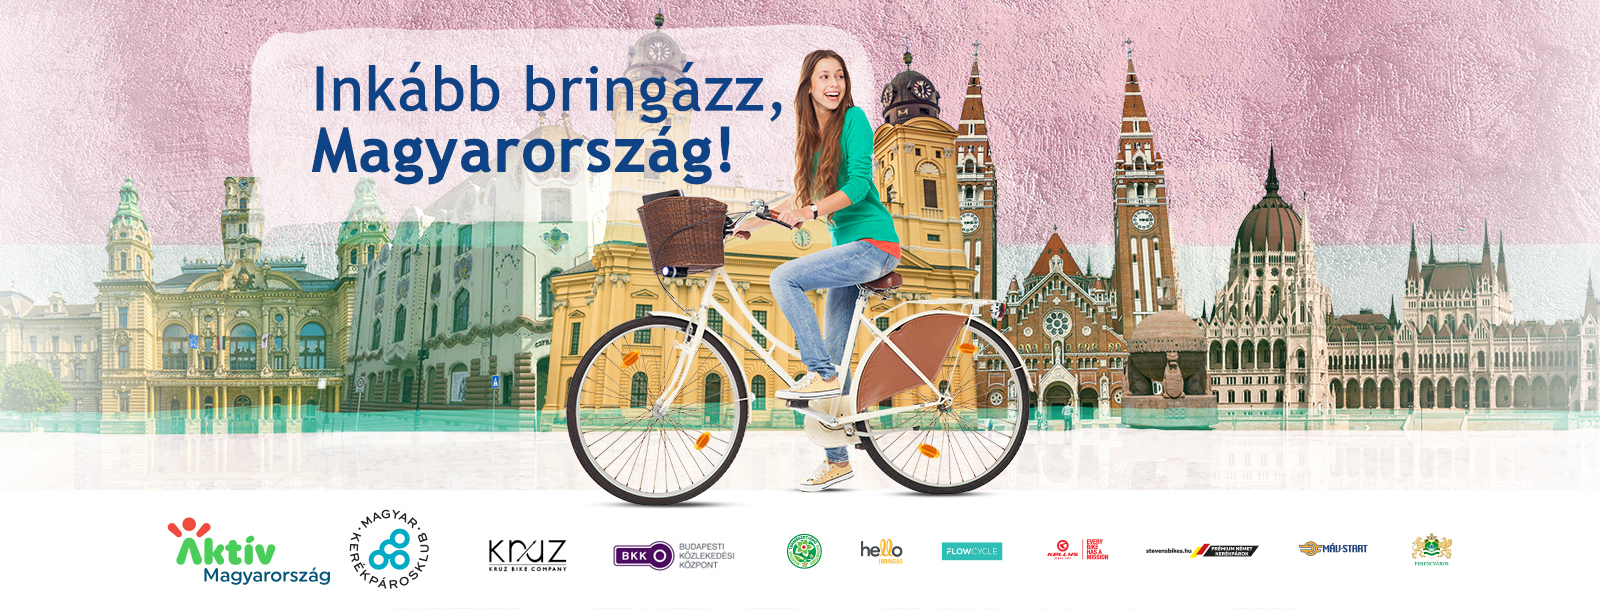 Inkább bringázz Fehérváron is - online kampánnyal népszerűsítik a kerékpározást